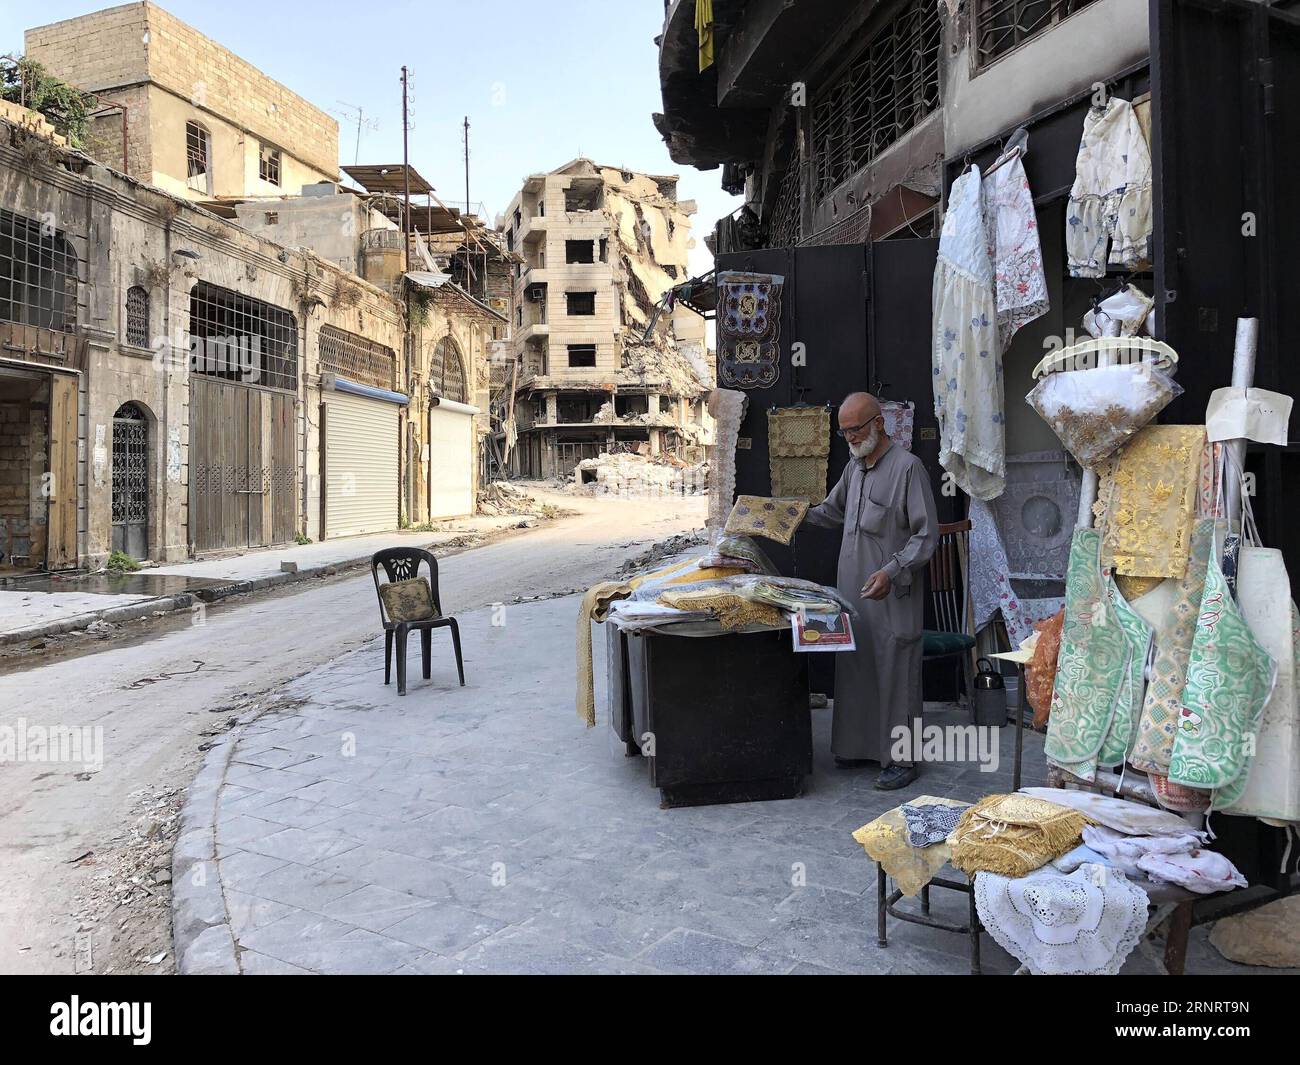 (171014) -- ALEPPO, 14. Oktober 2017 -- Abu Subhi arbeitet am 12. Oktober 2017 in seinem Geschäft in Aleppo, Syrien. In den Ruinen der historischsten Souks der Welt betreibt der 62-jährige Abu Subhi ein sehr kleines Geschäft in der Khan al-Harir-Straße in der alten Stadt Aleppo, umgeben von der Zerstörung des Krieges. Sein kleines Geschäft, in dem er Tischläufer und Tischdecken verkauft, ist das einzige Zeichen des Lebens in der Jahrhunderte alten Gegend.) SYRIEN-ALEPPO-ALTER KAUFMANN HummamxSheikhxAli PUBLICATIONxNOTxINxCHN Stockfoto